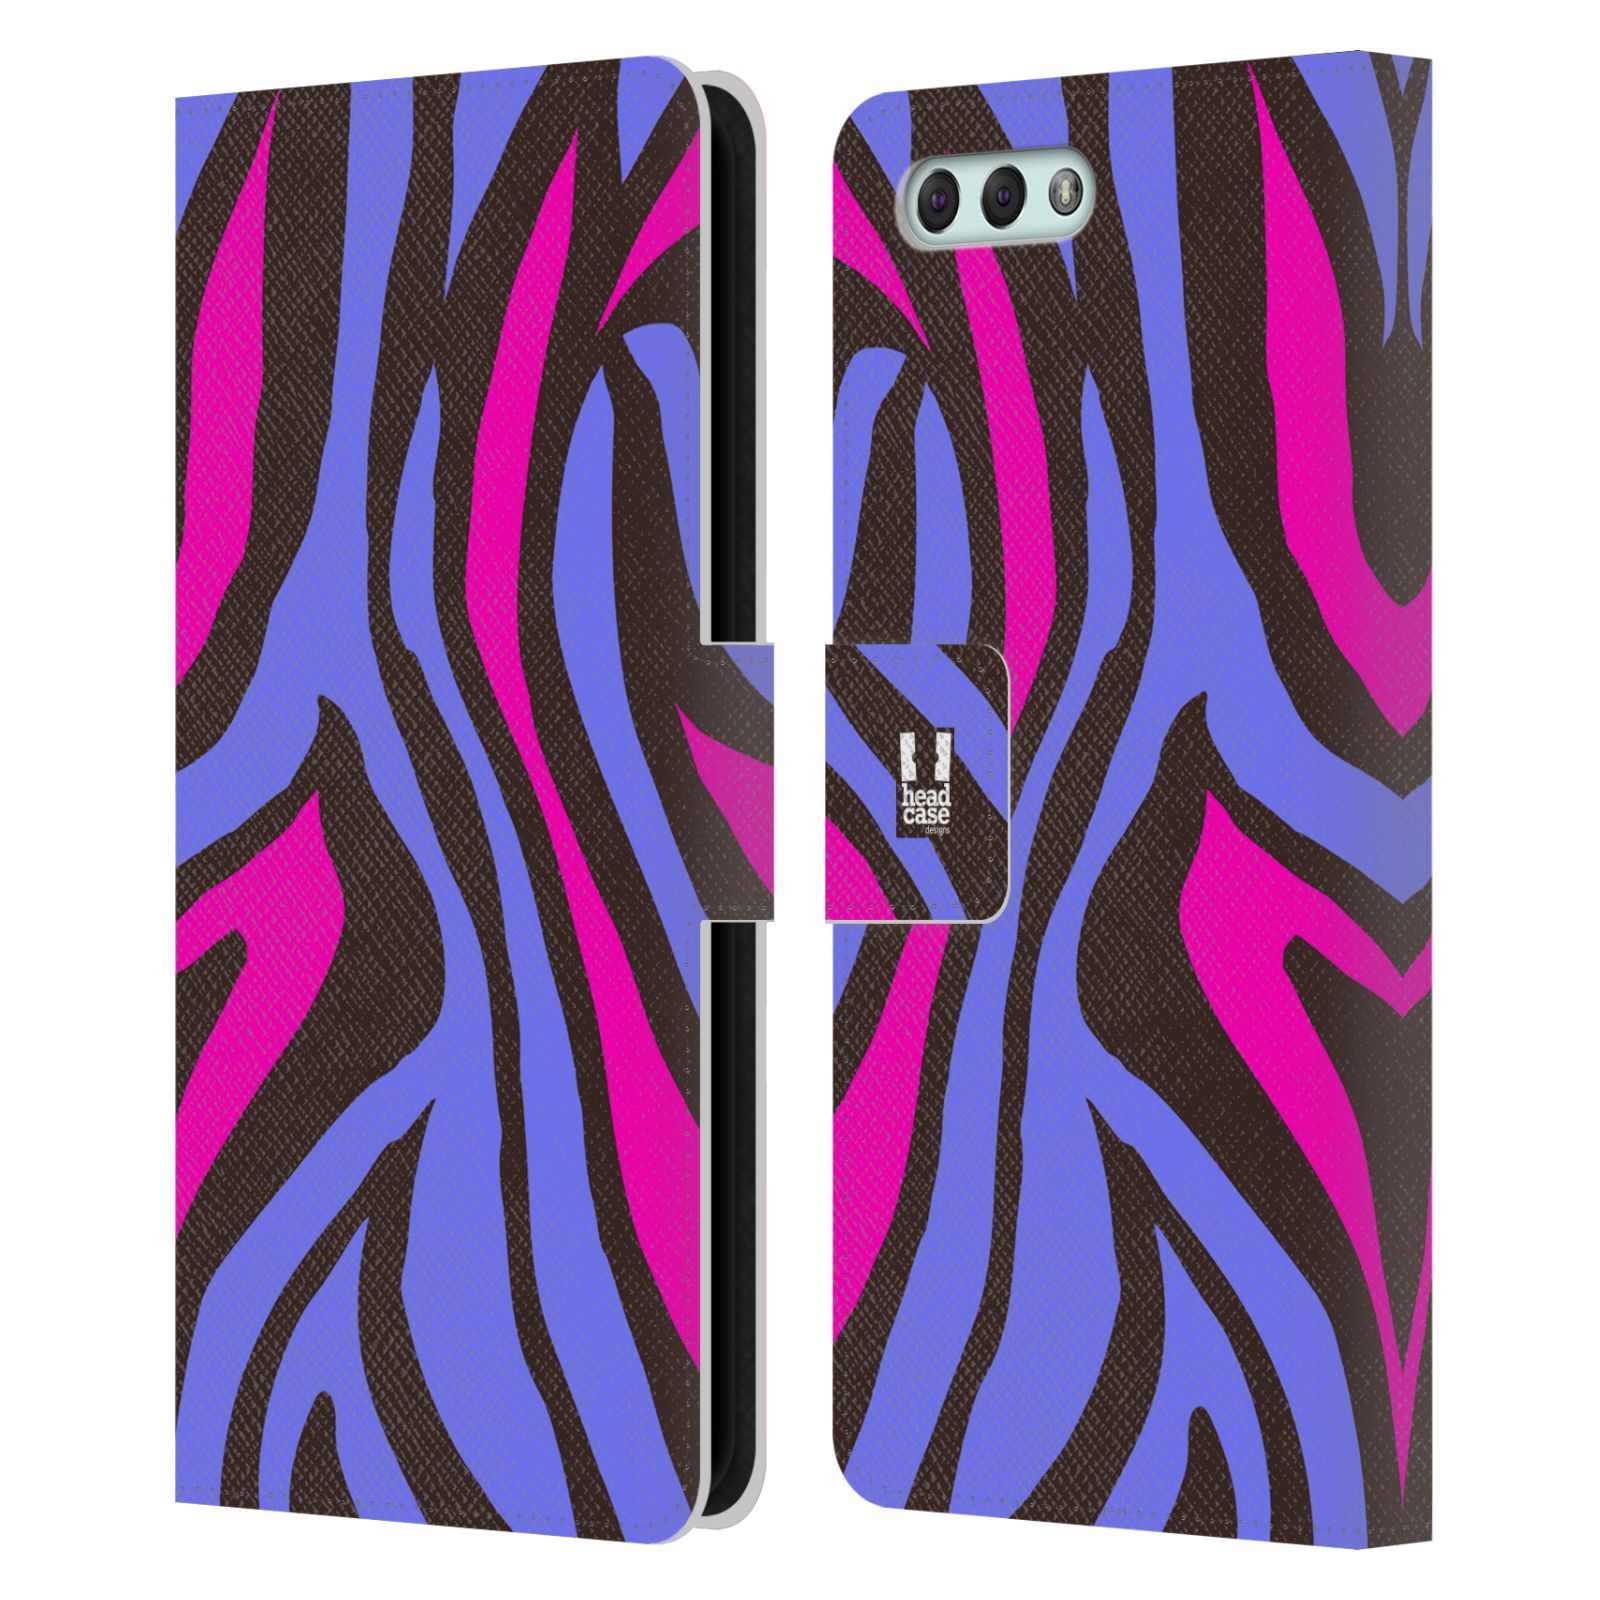 Pouzdro pro mobil Asus Zenfone 4 ZE554KL  - Divoký vzor zvíře fialová, růžová